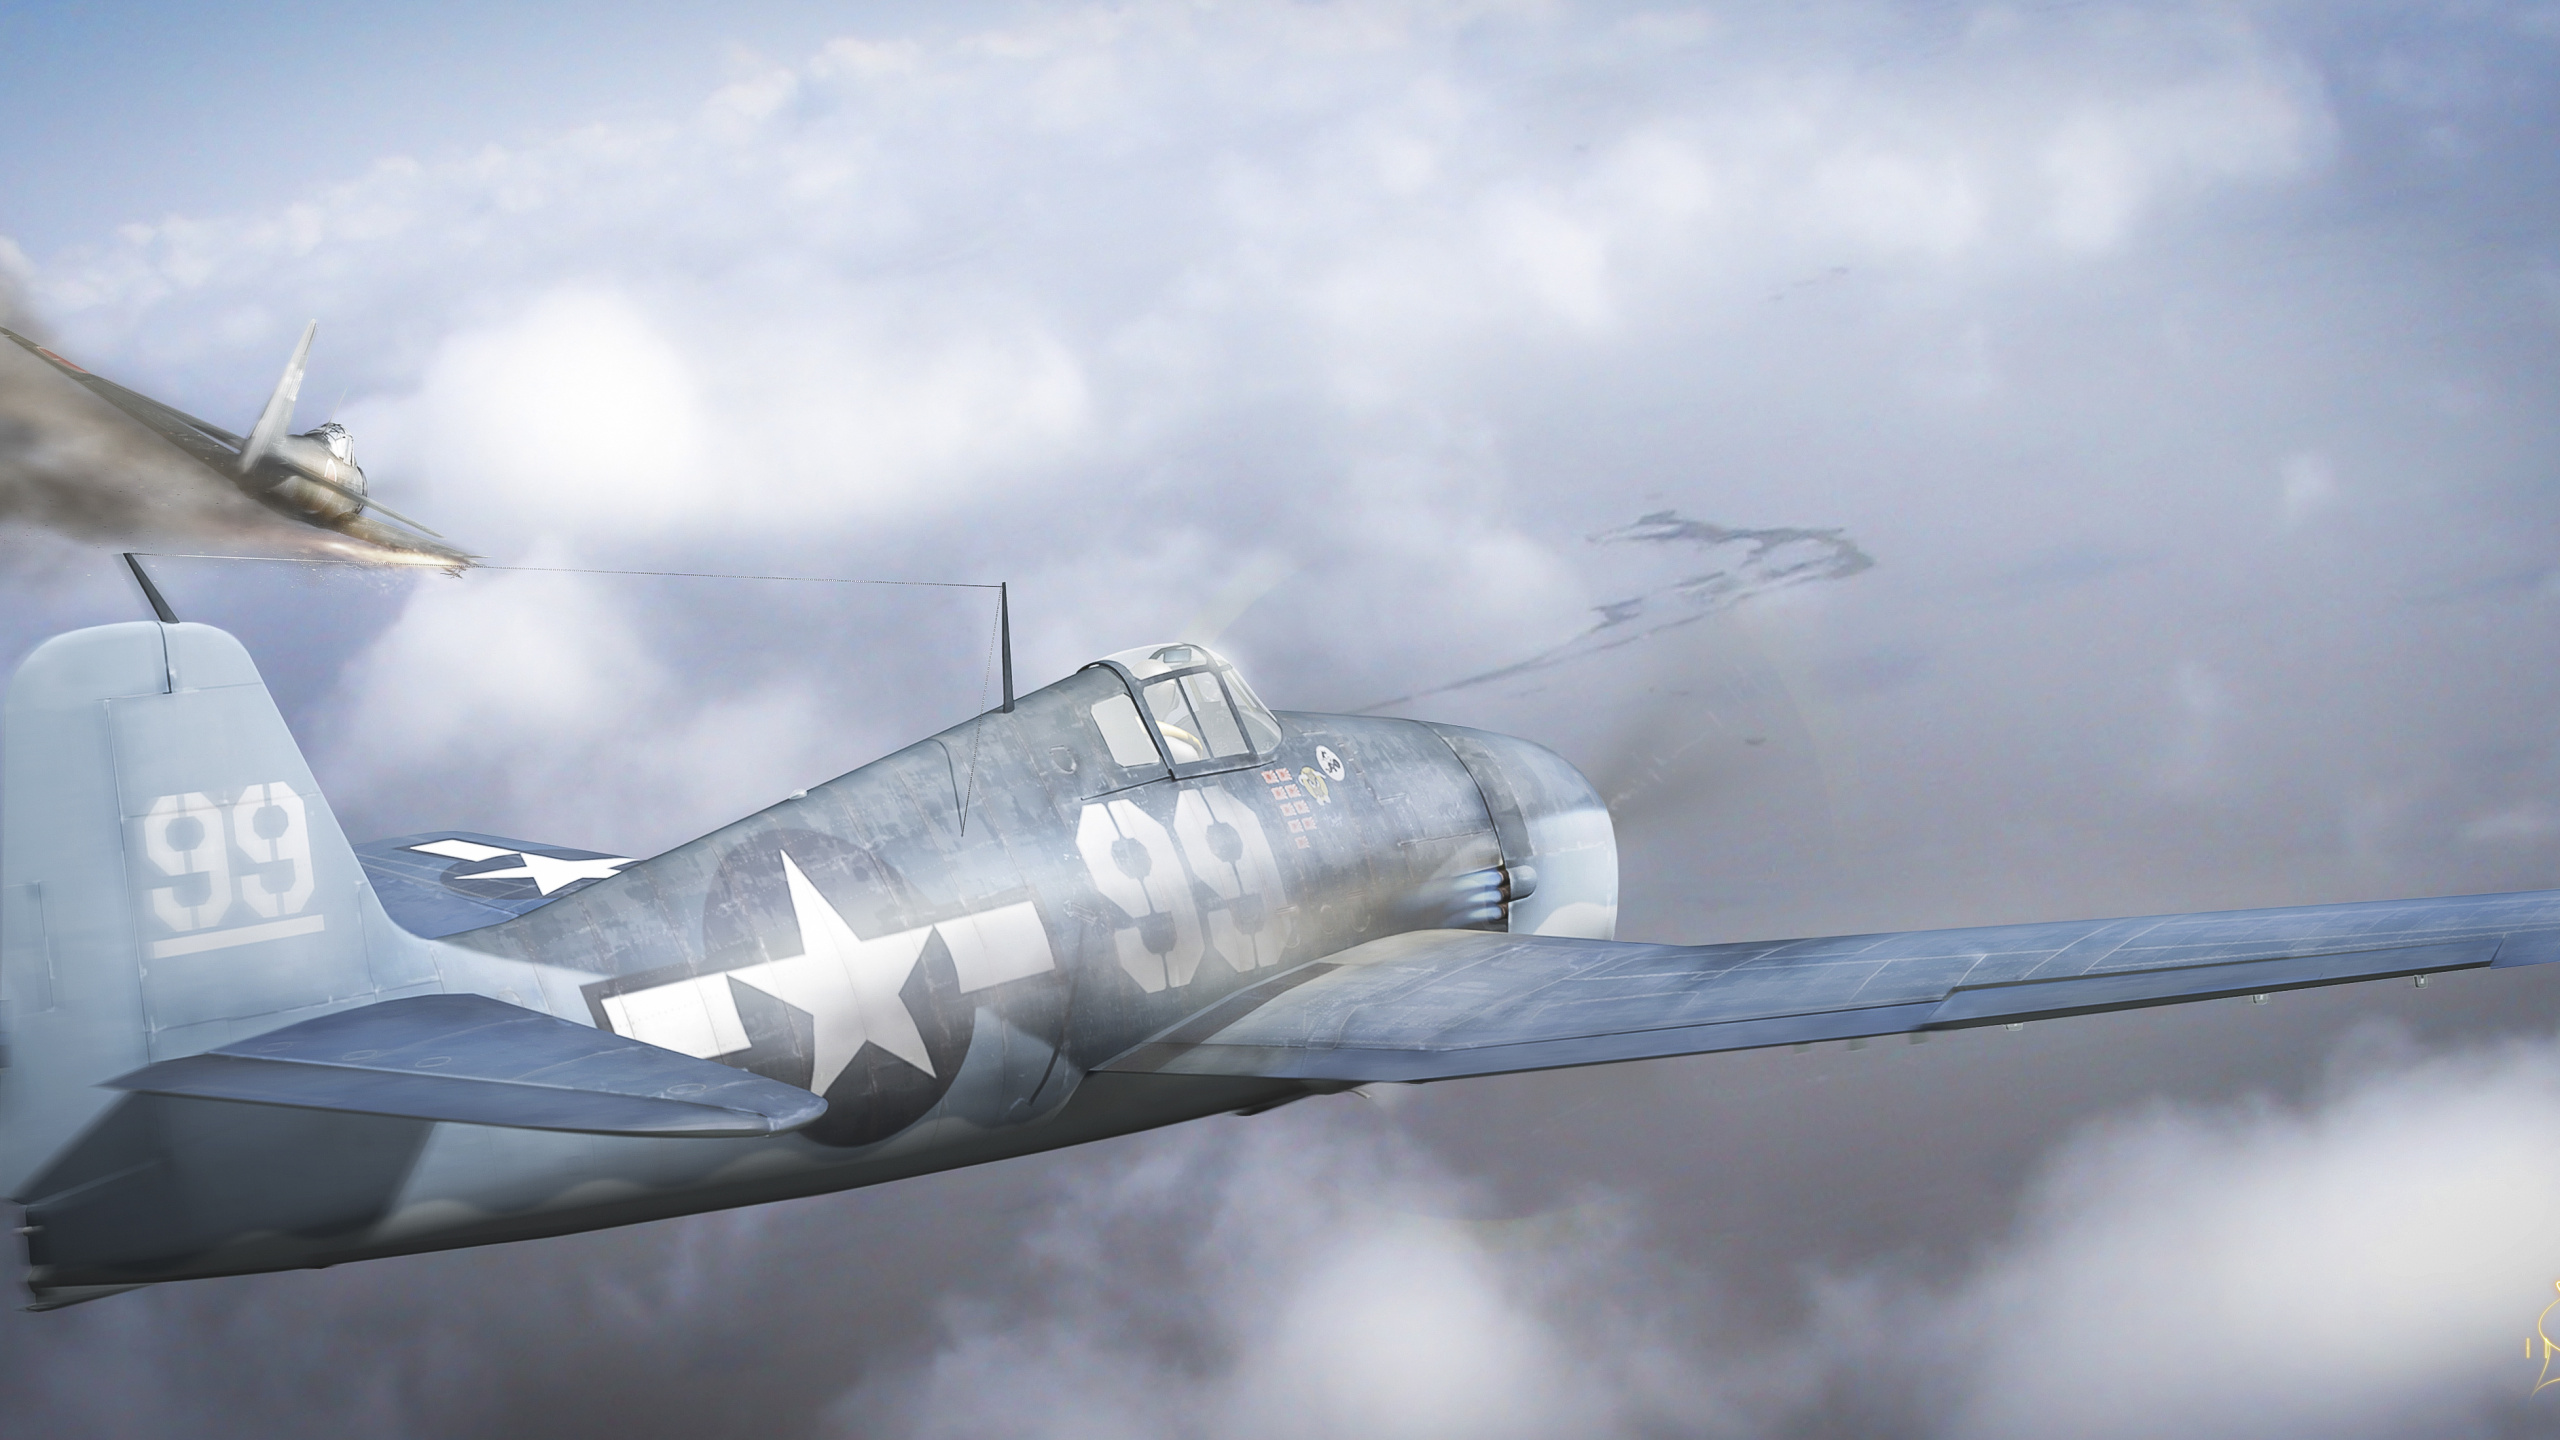 第二次世界大战, 航空, 航班, 军用飞机, 空军 壁纸 2560x1440 允许